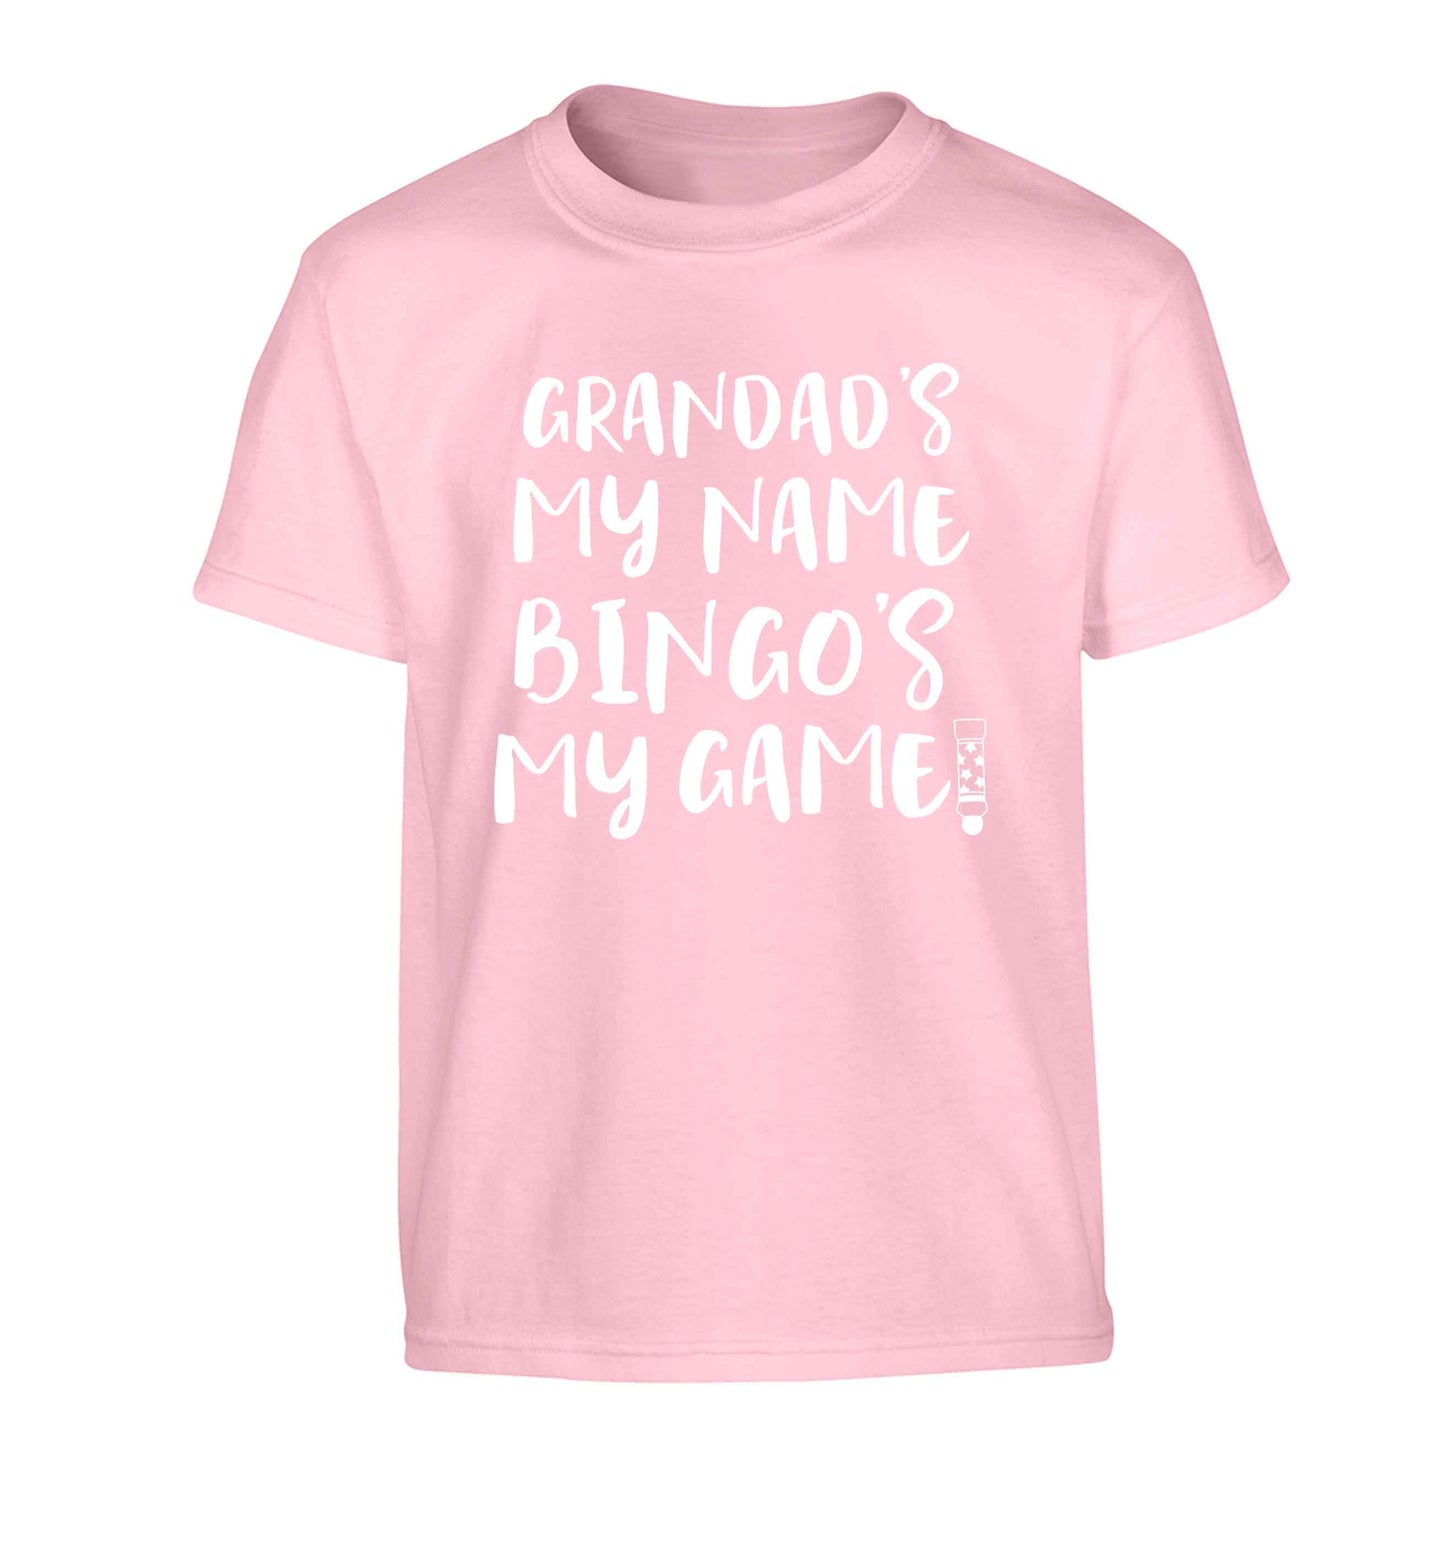 Grandad's my name bingo's my game! Children's light pink Tshirt 12-13 Years